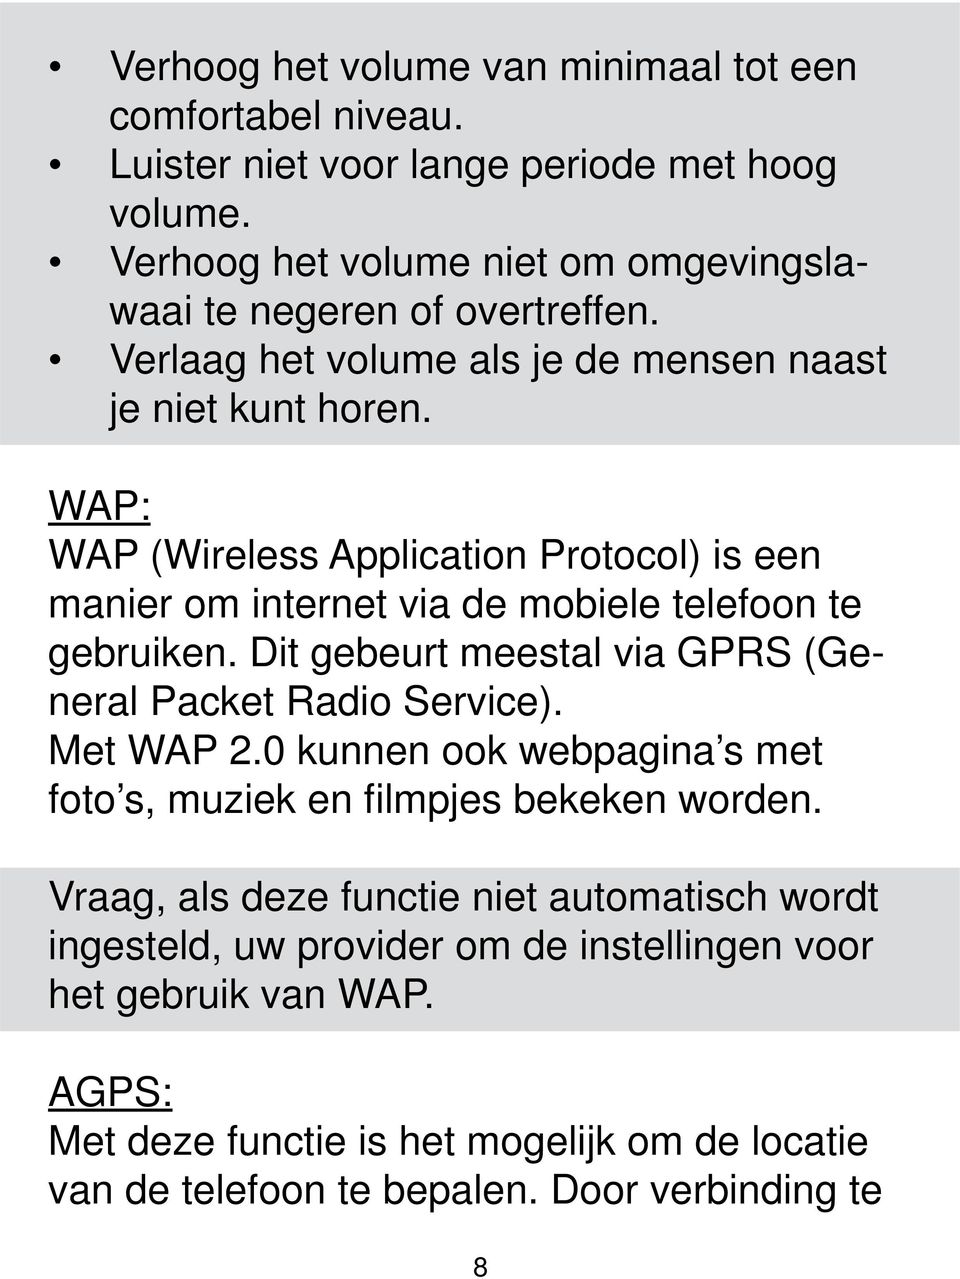 WAP: WAP (Wireless Application Protocol) is een manier om internet via de mobiele telefoon te gebruiken. Dit gebeurt meestal via GPRS (General Packet Radio Service). Met WAP 2.